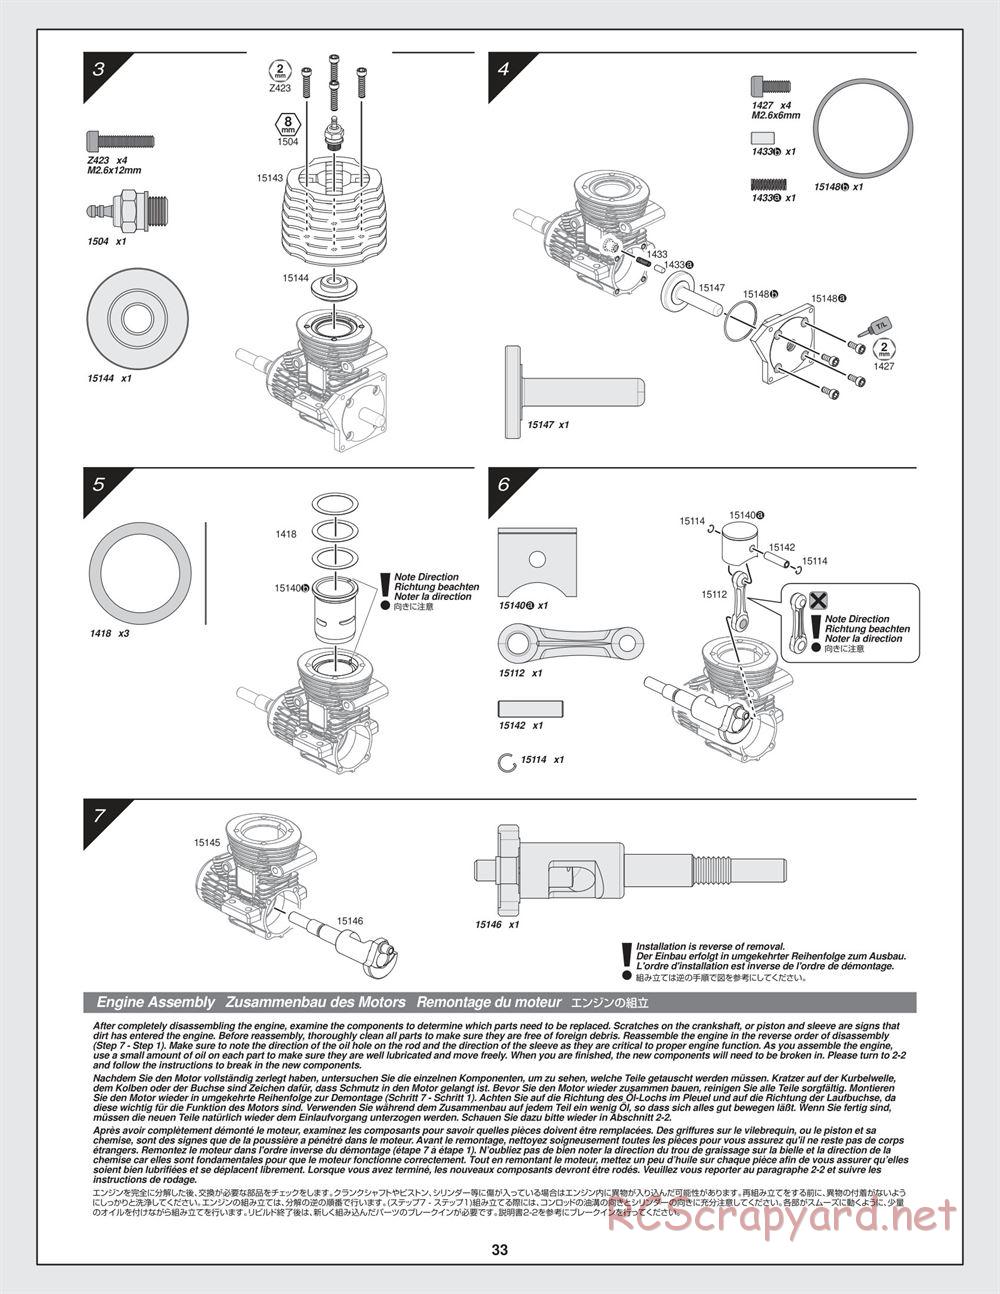 HPI - Bullet ST 3.0 - Manual - Page 33